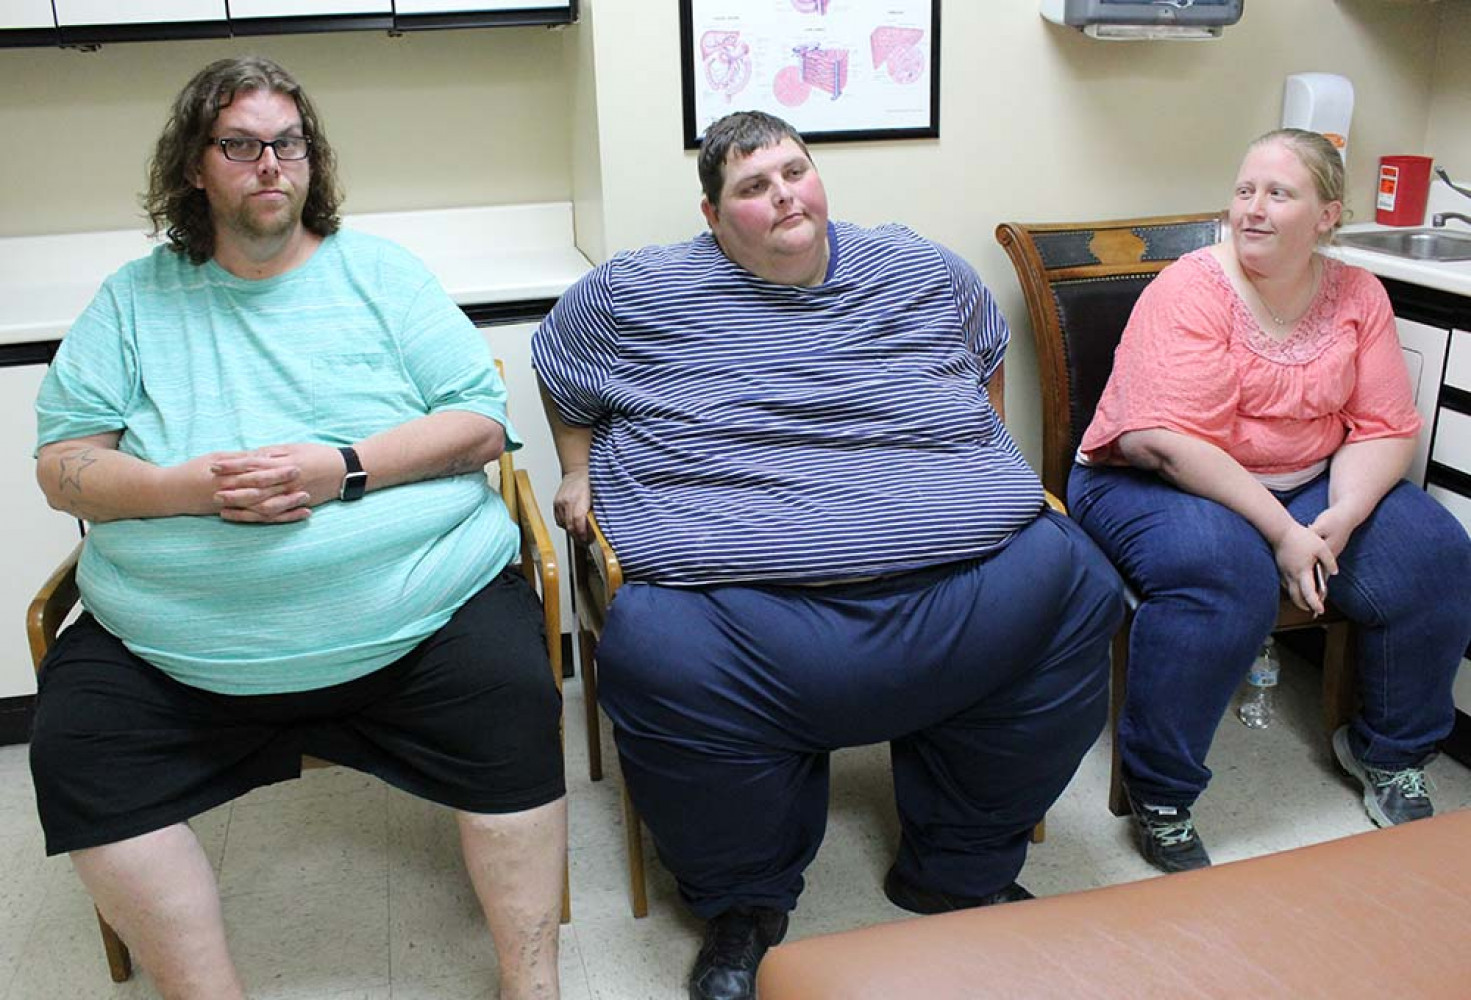 Dr. Now’ı bile şaşırtan değişim: Toplam 405 kilo verdiler!